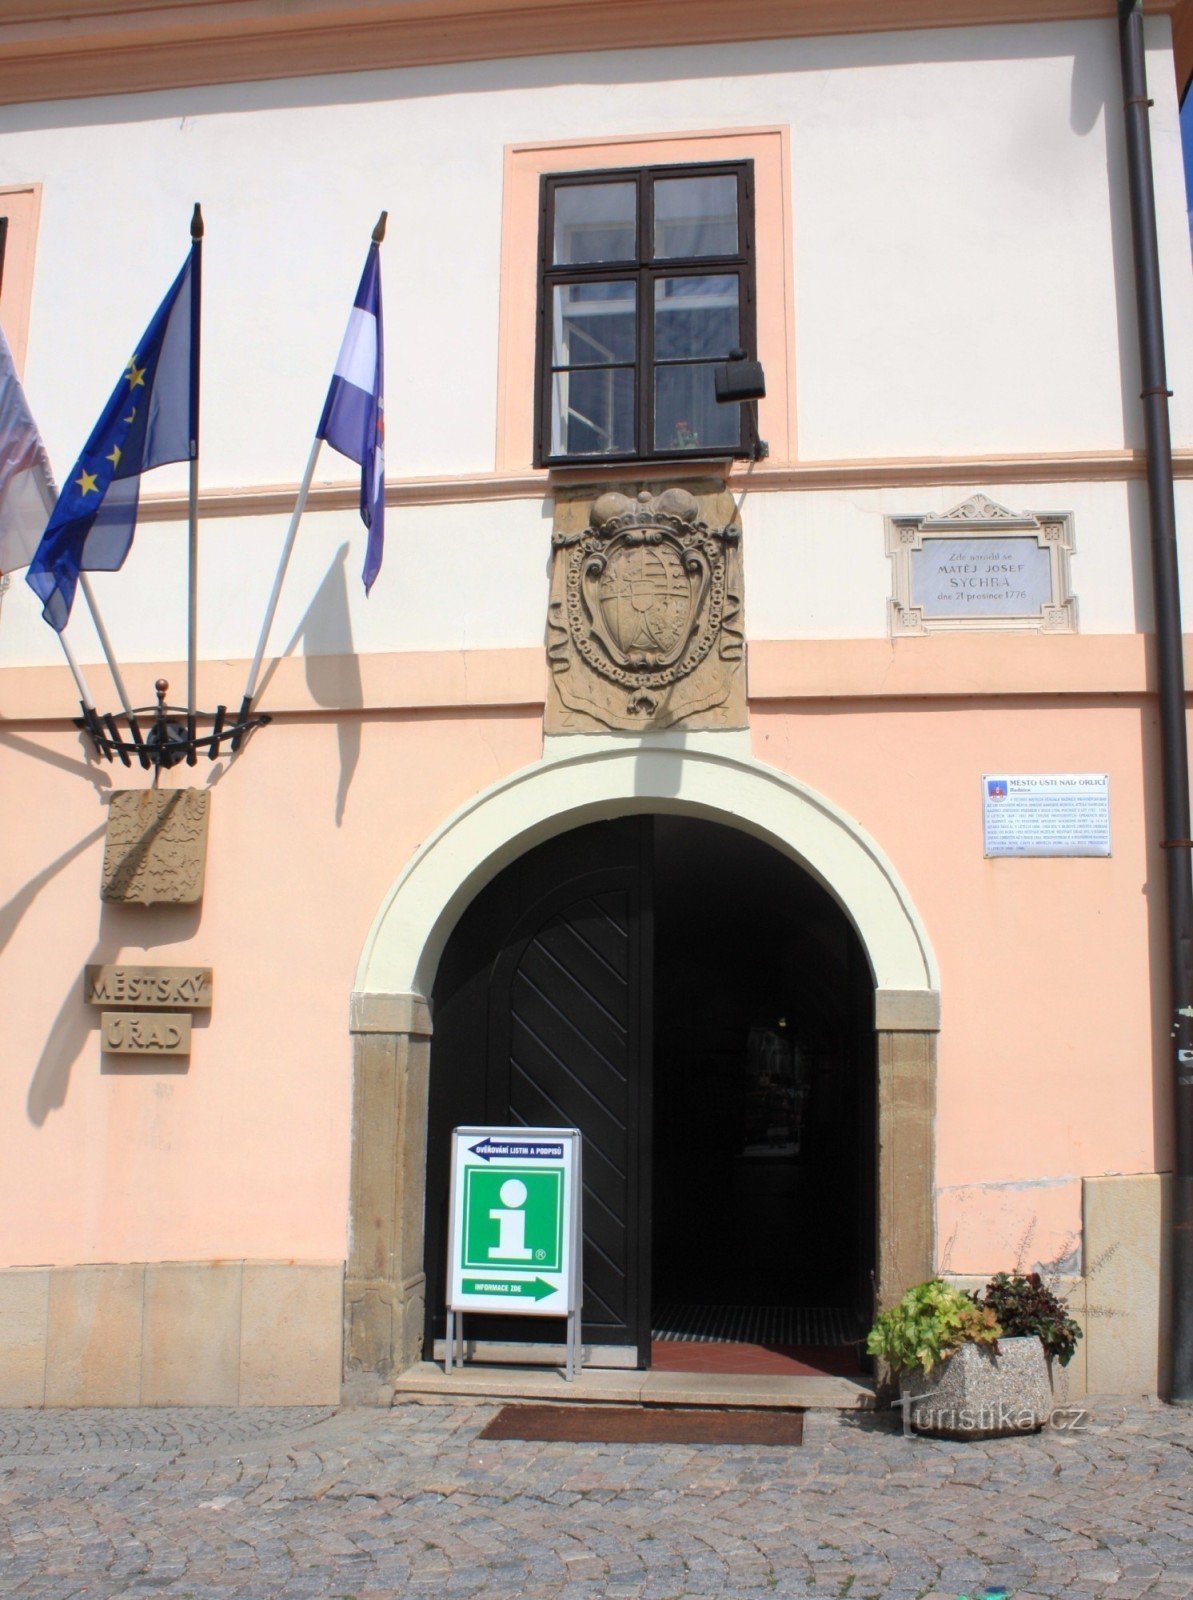 Ústí nad Orlicí - city information center